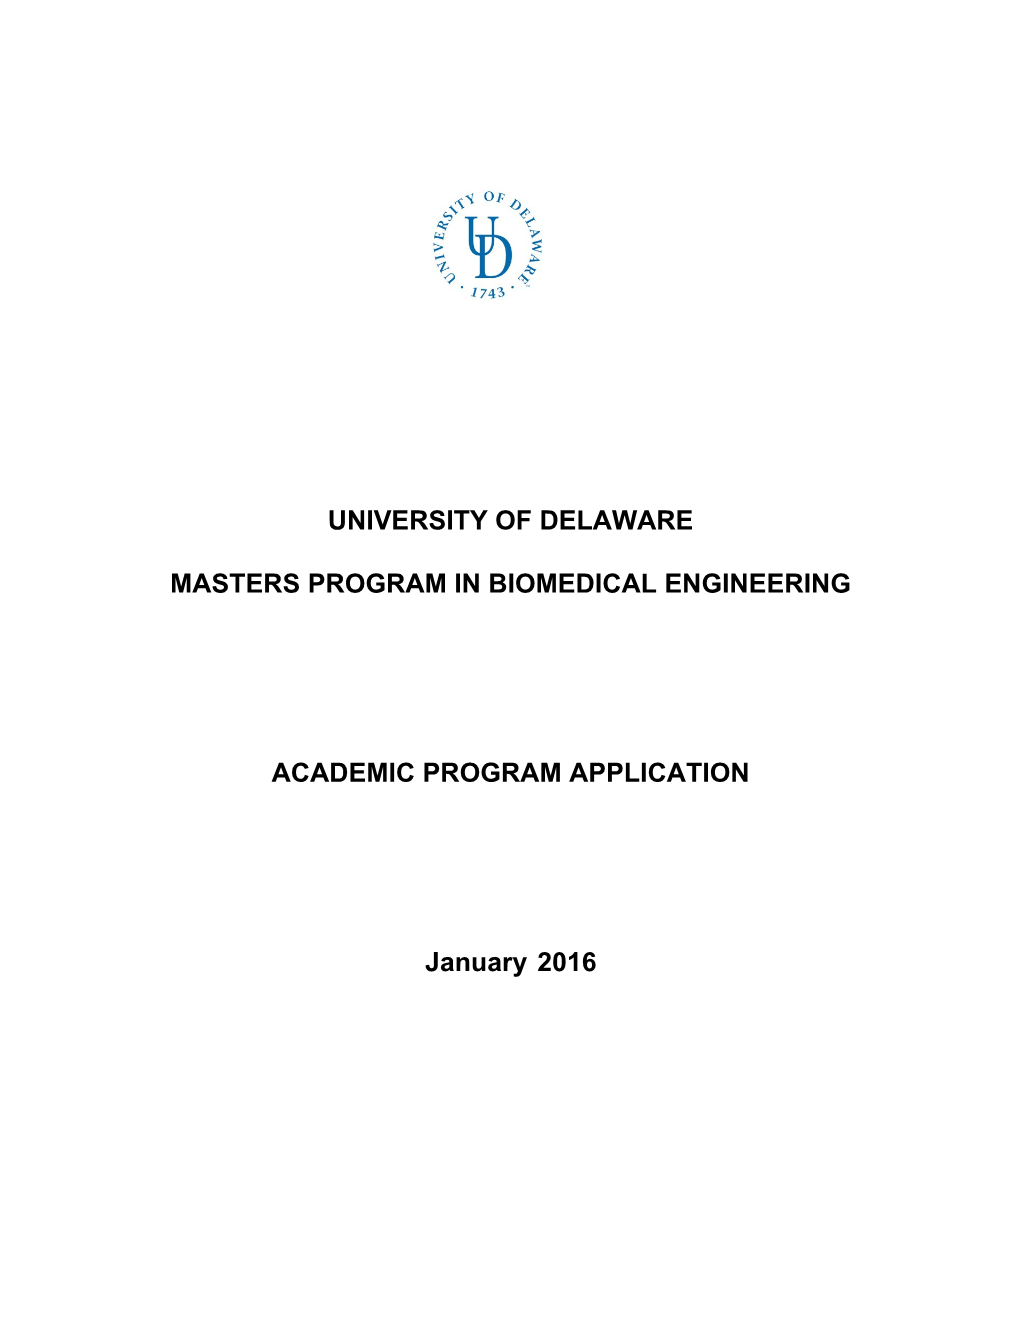 Masters Program in Biomedical Engineering